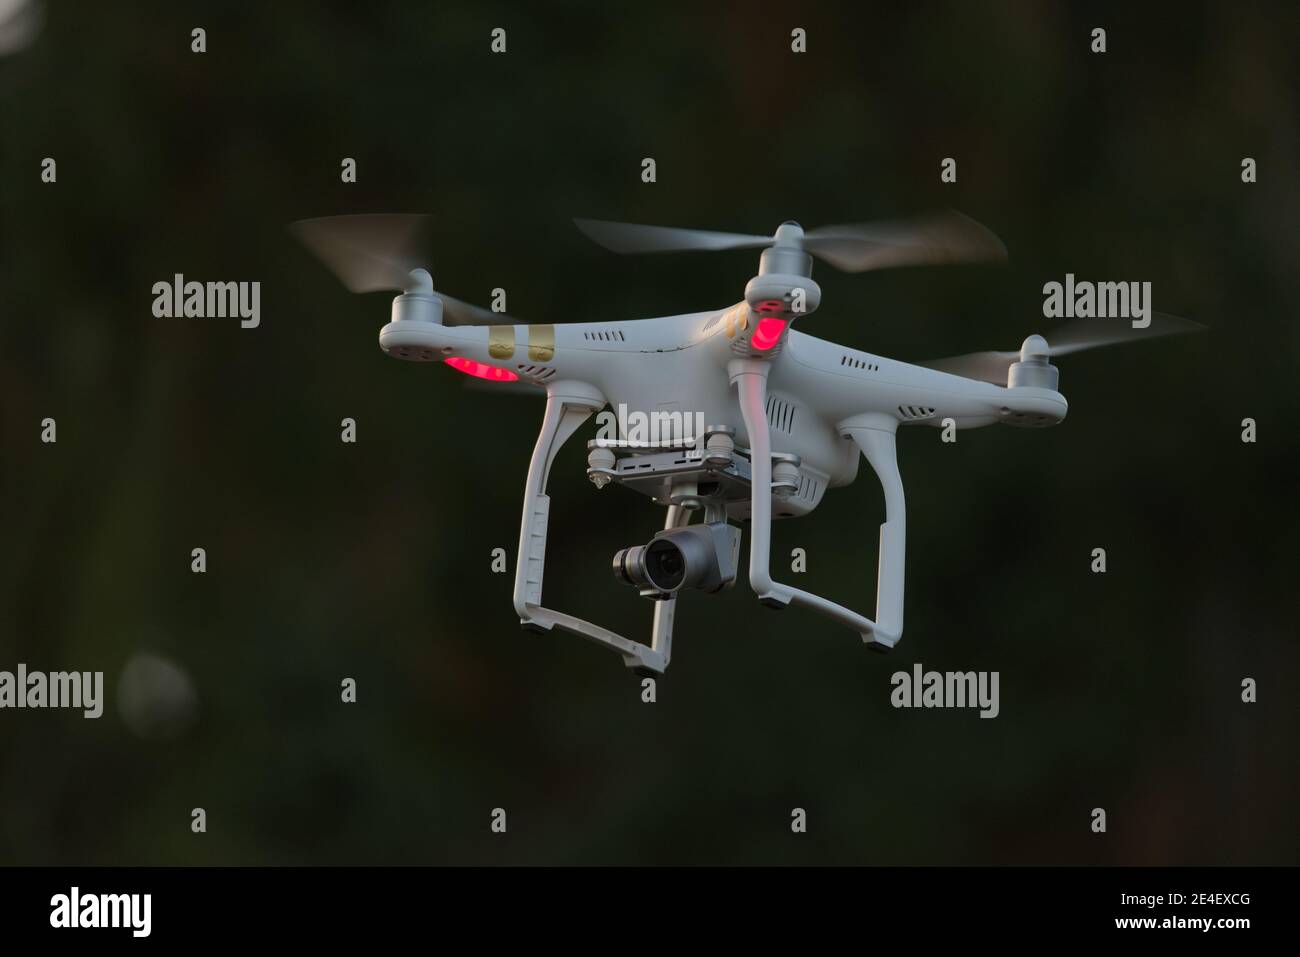 20 - isolierte Quadcopter-Kamera Drohne mit Digitalkamera. Schlichter dunkler Hintergrund mit selektivem Fokus, der die helle weiße Drohne als Motiv hinterlässt. Stockfoto